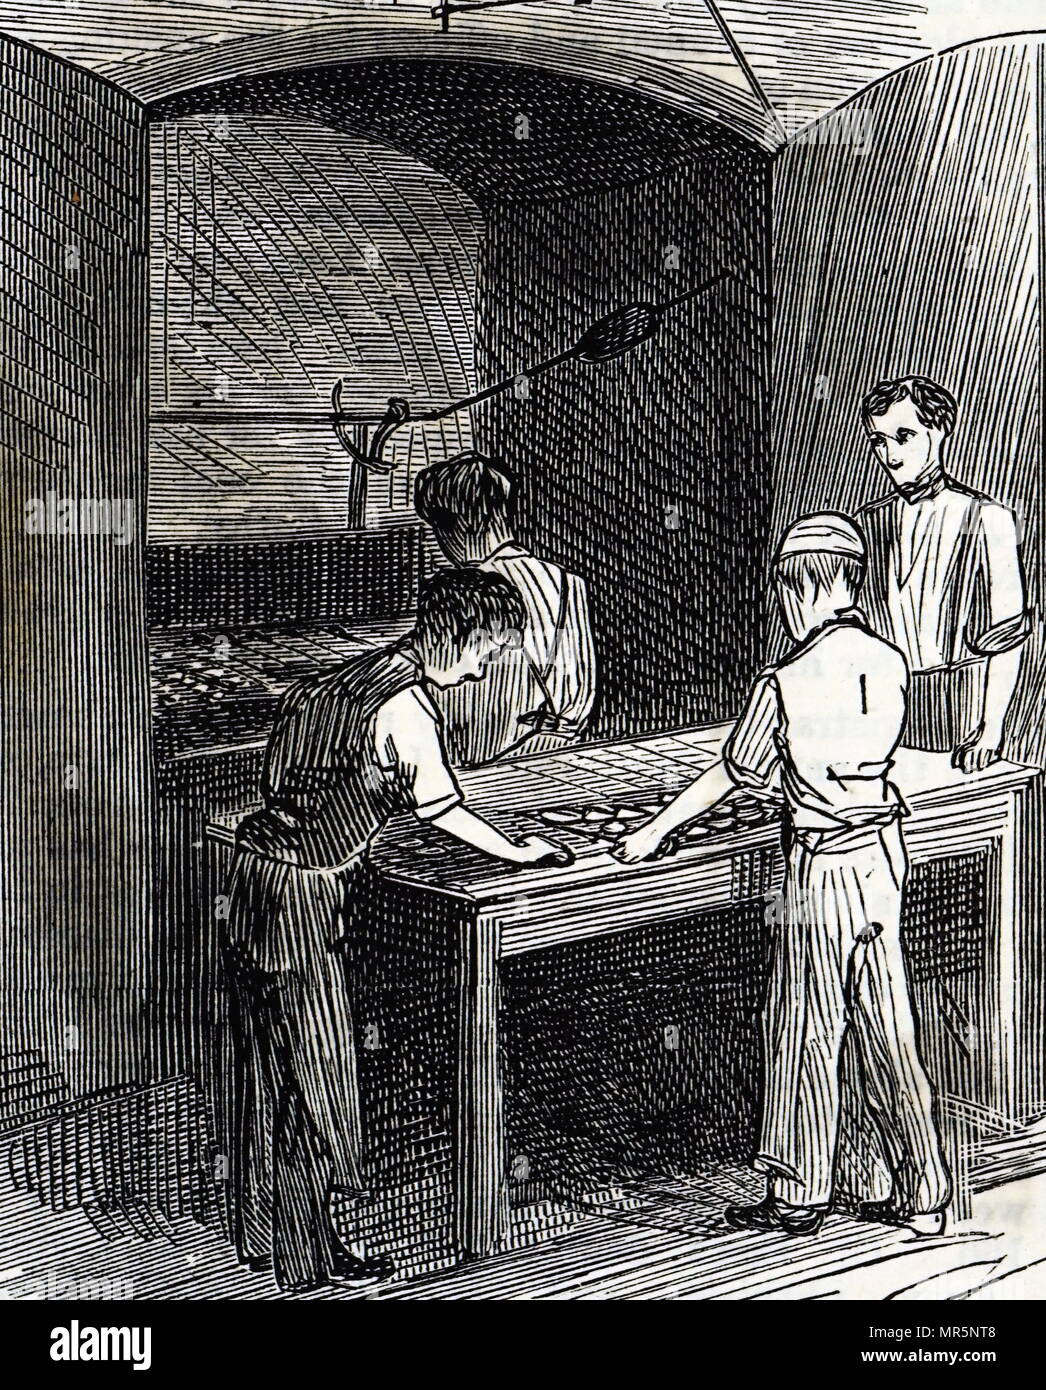 Gravur, die Kekse in den Ofen an die Peek Frean & Co's Keksfabrik. Vom 19. Jahrhundert Stockfoto